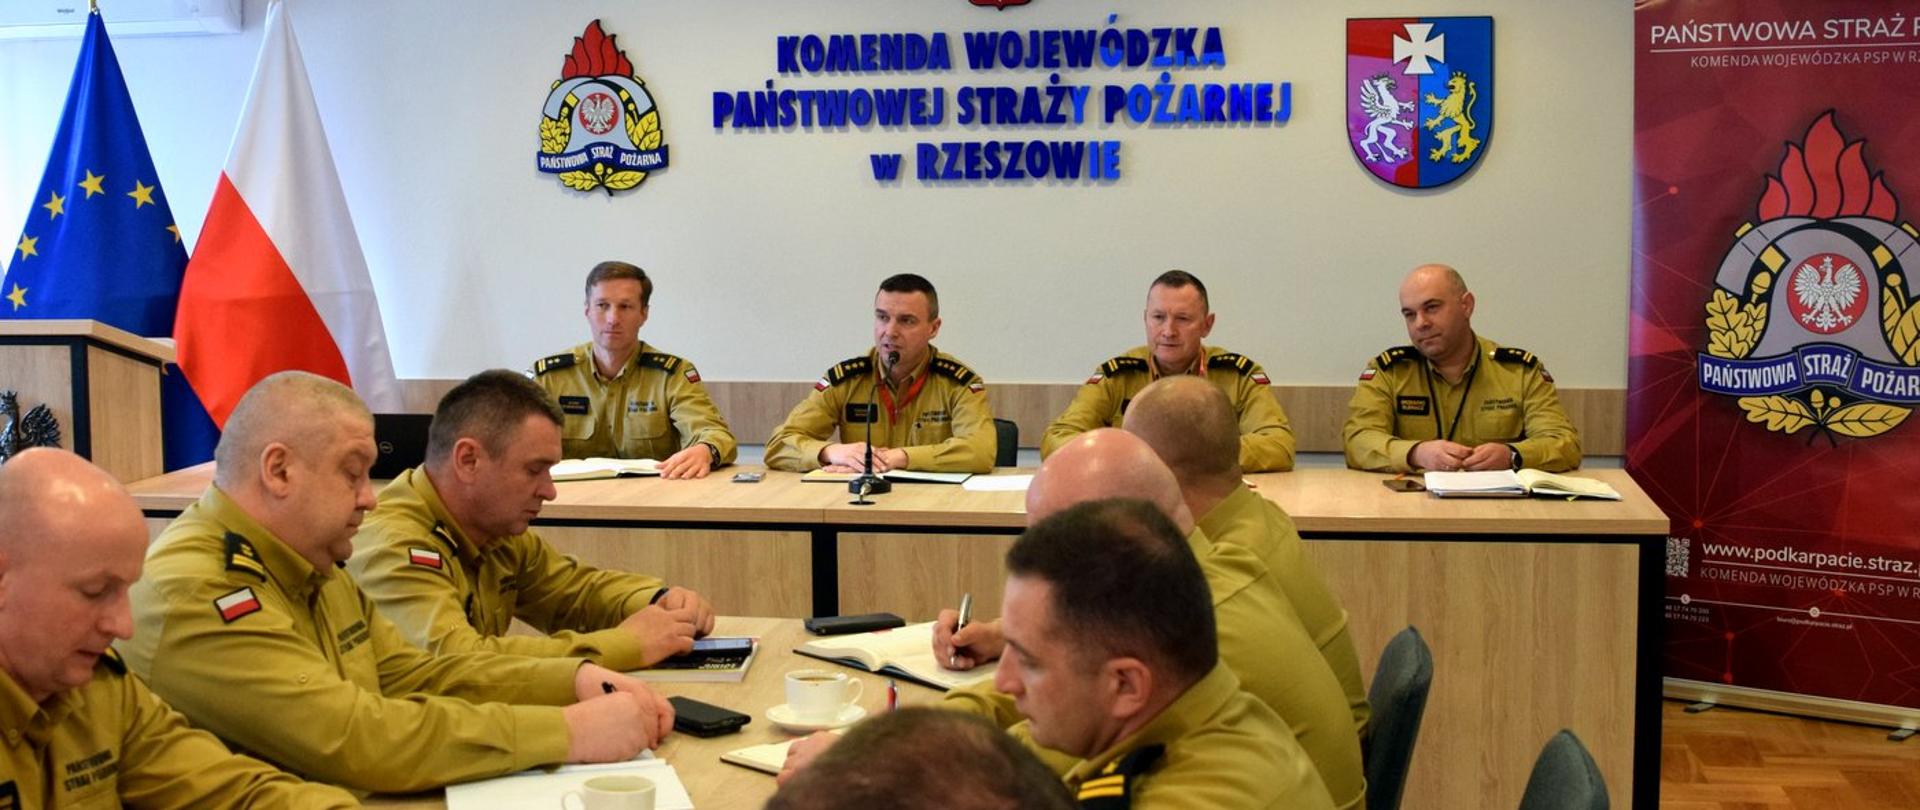 Zdjęcie zrobione w pomieszczeniu, podczas narady służbowej kadry kierowniczej Państwowej Straży Pożarnej. Na zdjęciu oficerowie PSP w piaskowych mundurach służbowych siedzą przy stole konferencyjnym.